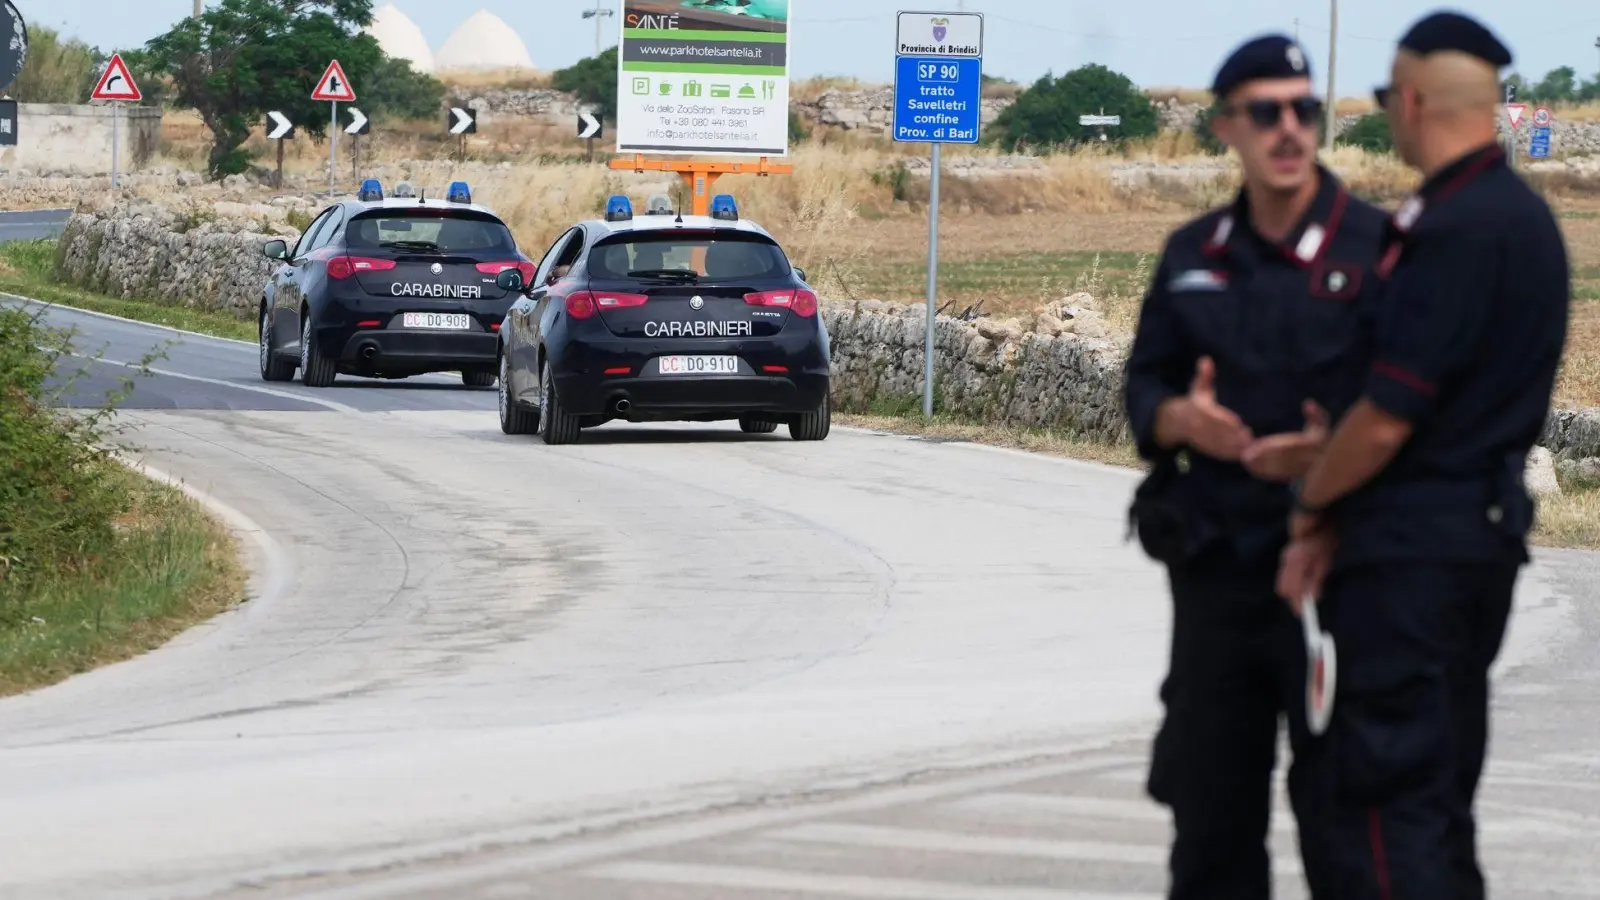 Bei einem Überfall auf einen Geldtransporter nahe Brindisi machte ein bewaffnetes Kommando drei Millionen Euro Beute. Die Fahndung der Carabinieri läuft. (Symbolbild) (Foto: Gregorio Borgia/AP/dpa)